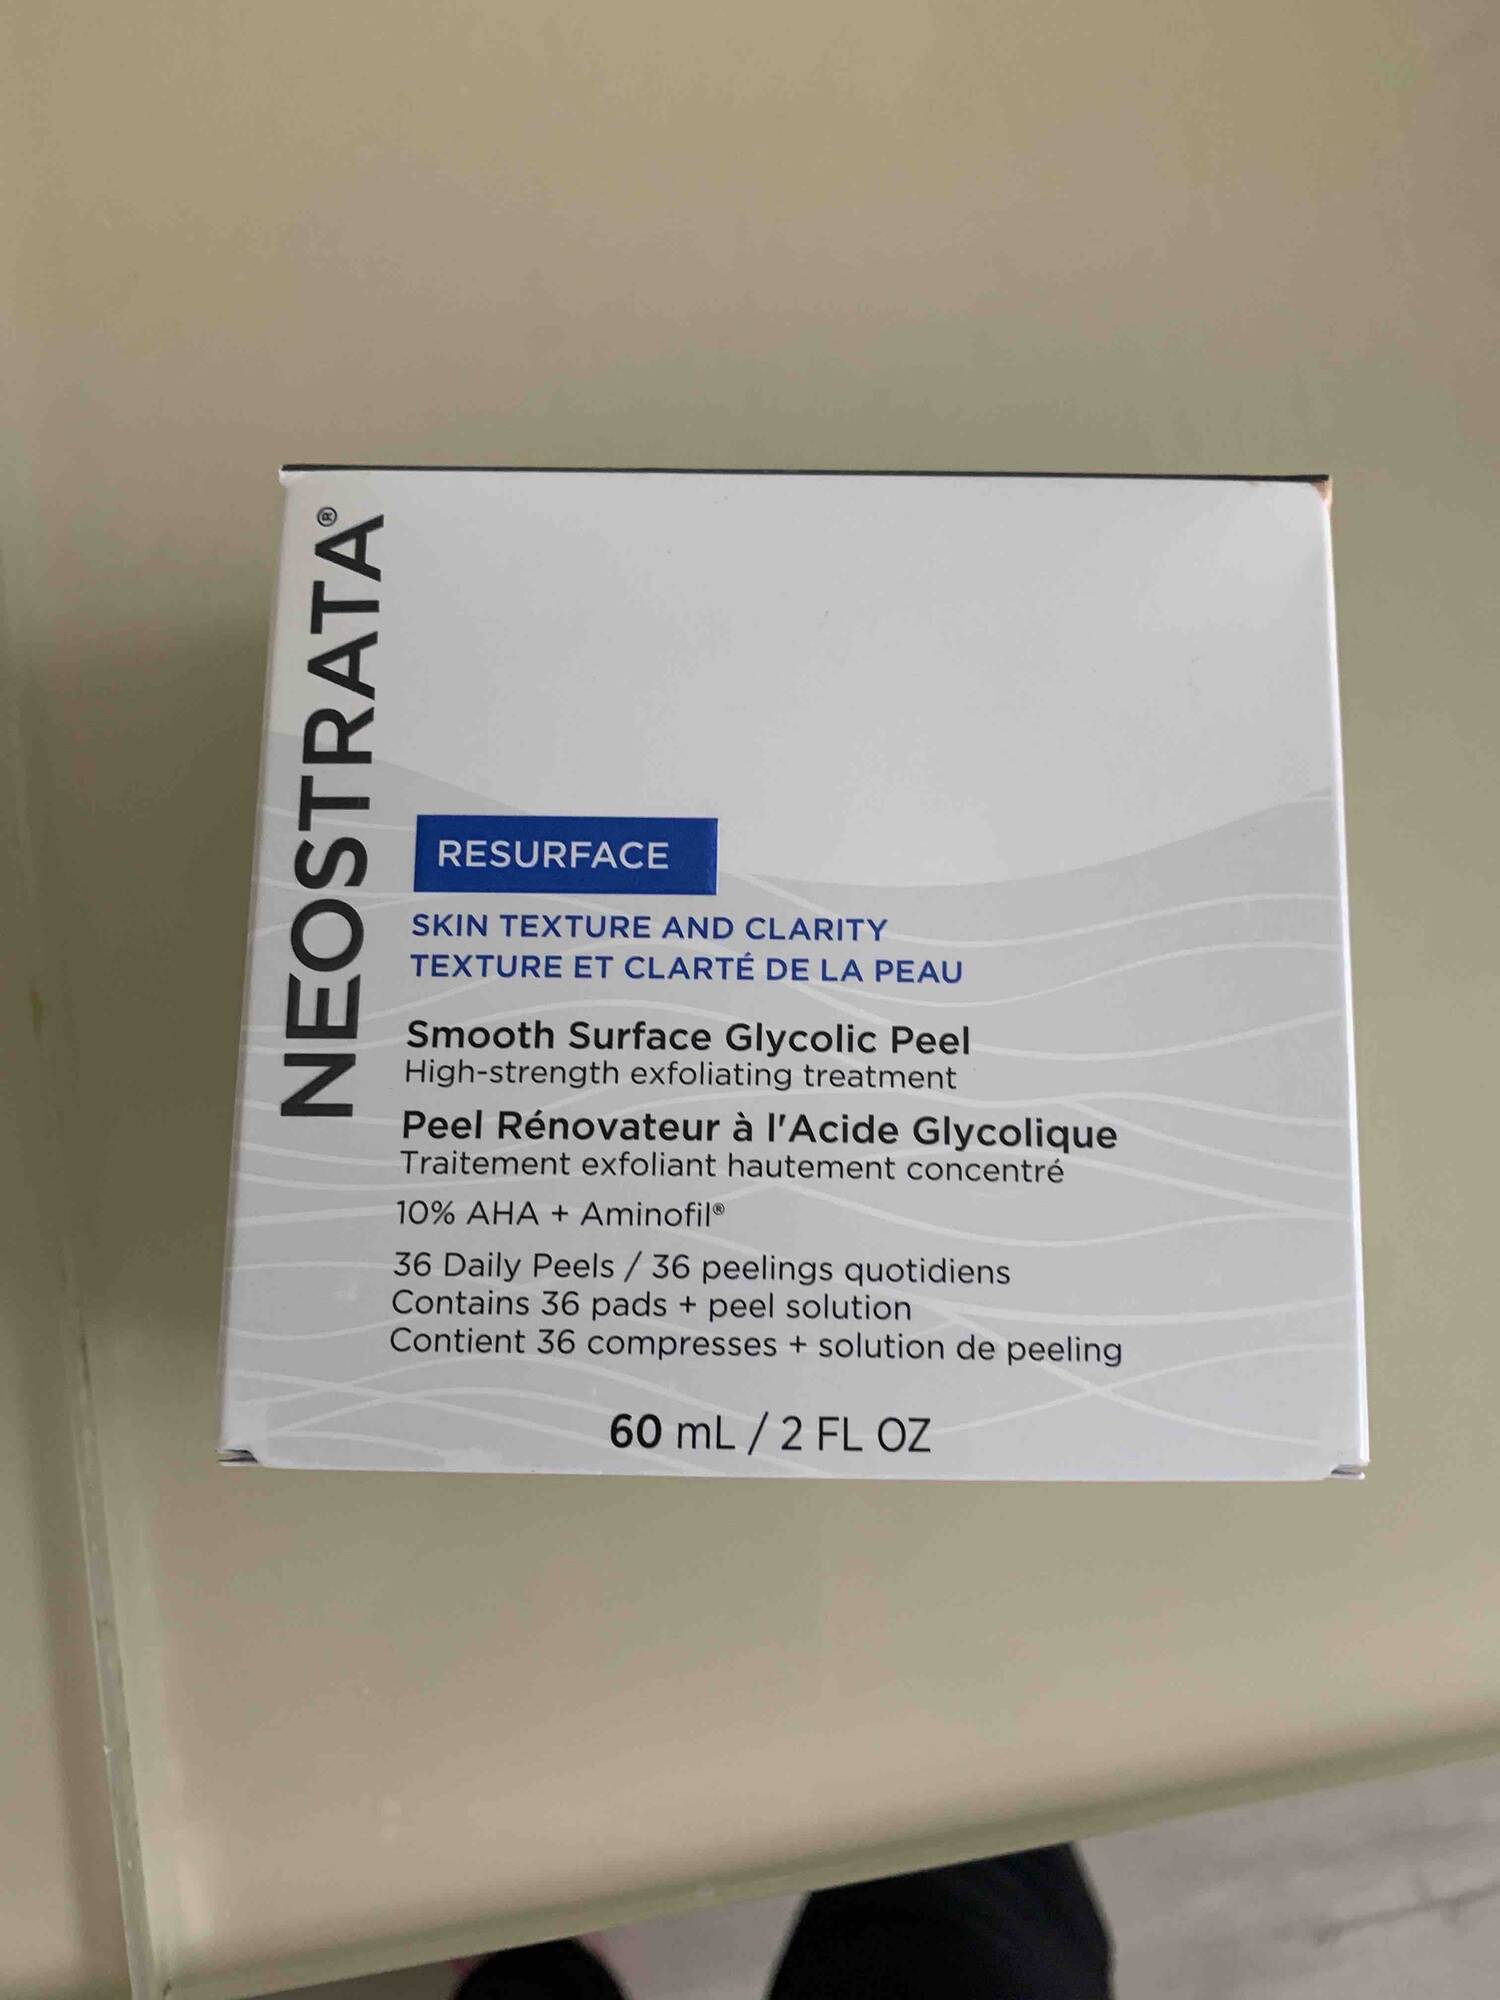 NEOSTRATA - Resurface - Traitement exfoliant hautement concentré